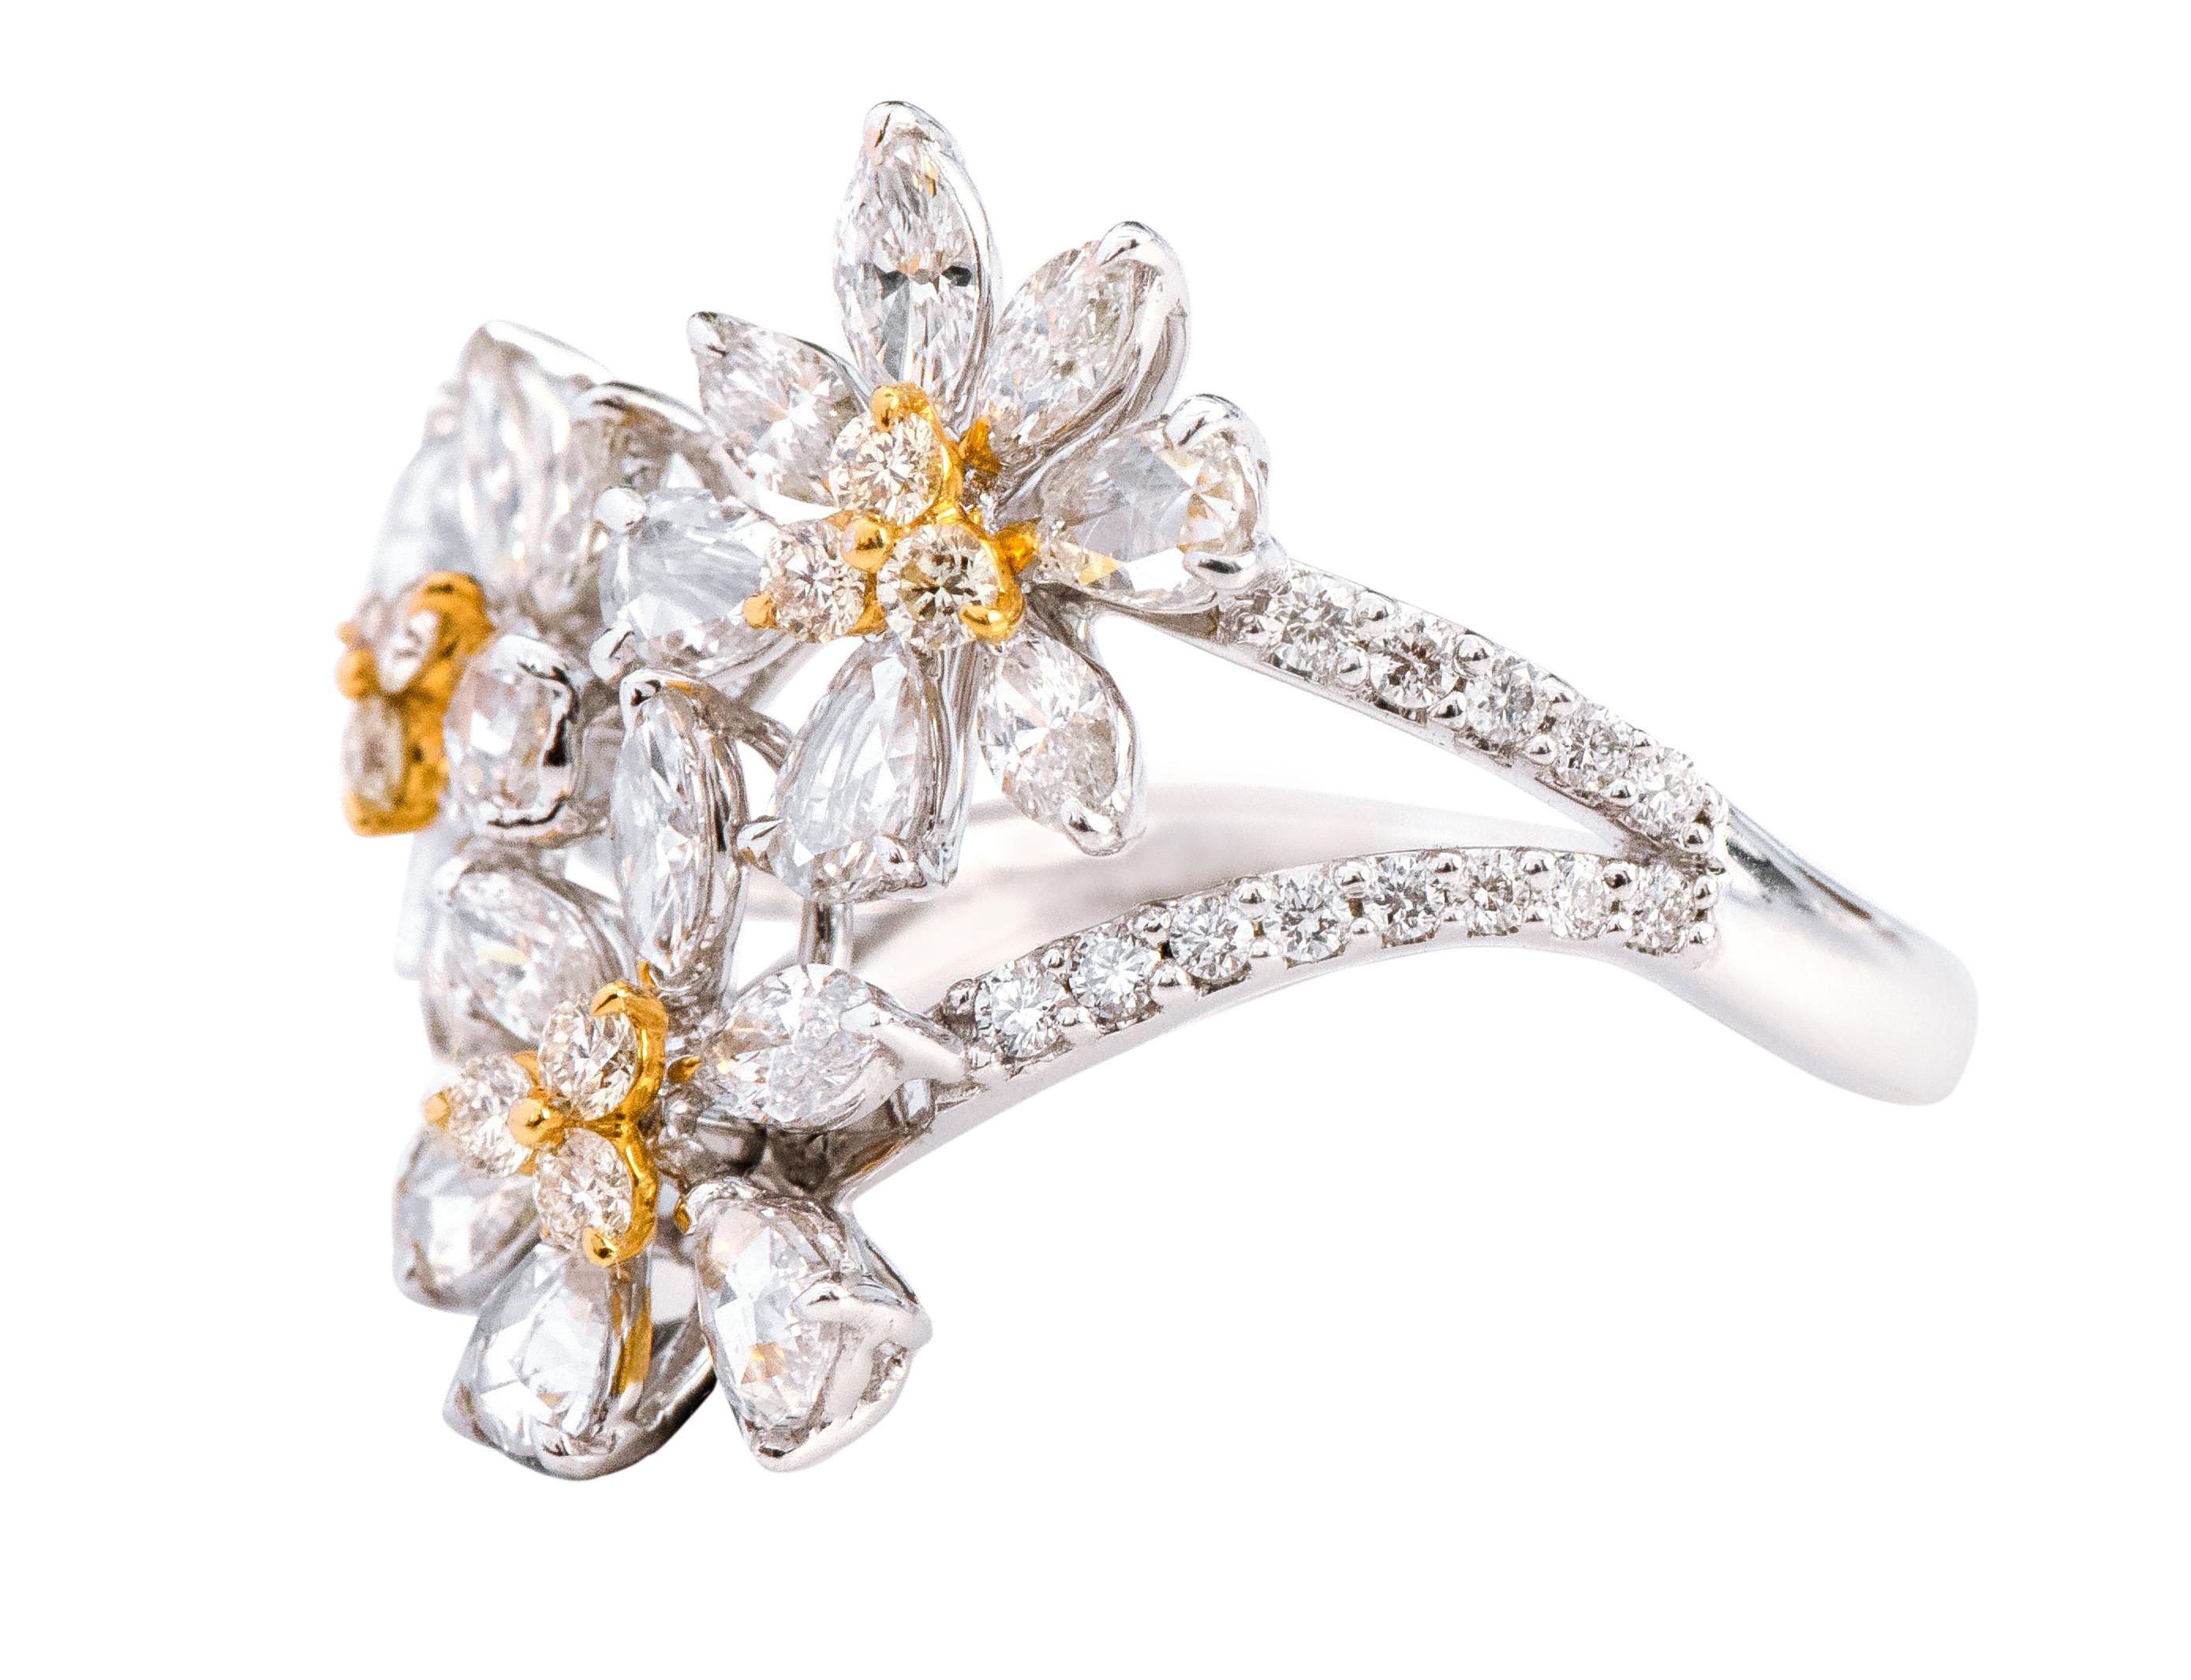 bague à motif floral en or blanc 18 carats avec un diamant de 2,08 carats

Cette bague exquise à trois fleurs en diamant est plus qu'exemplaire. Elle témoigne de notre amour pour la nature et sa beauté éminente. Les diamants spéciaux en forme de